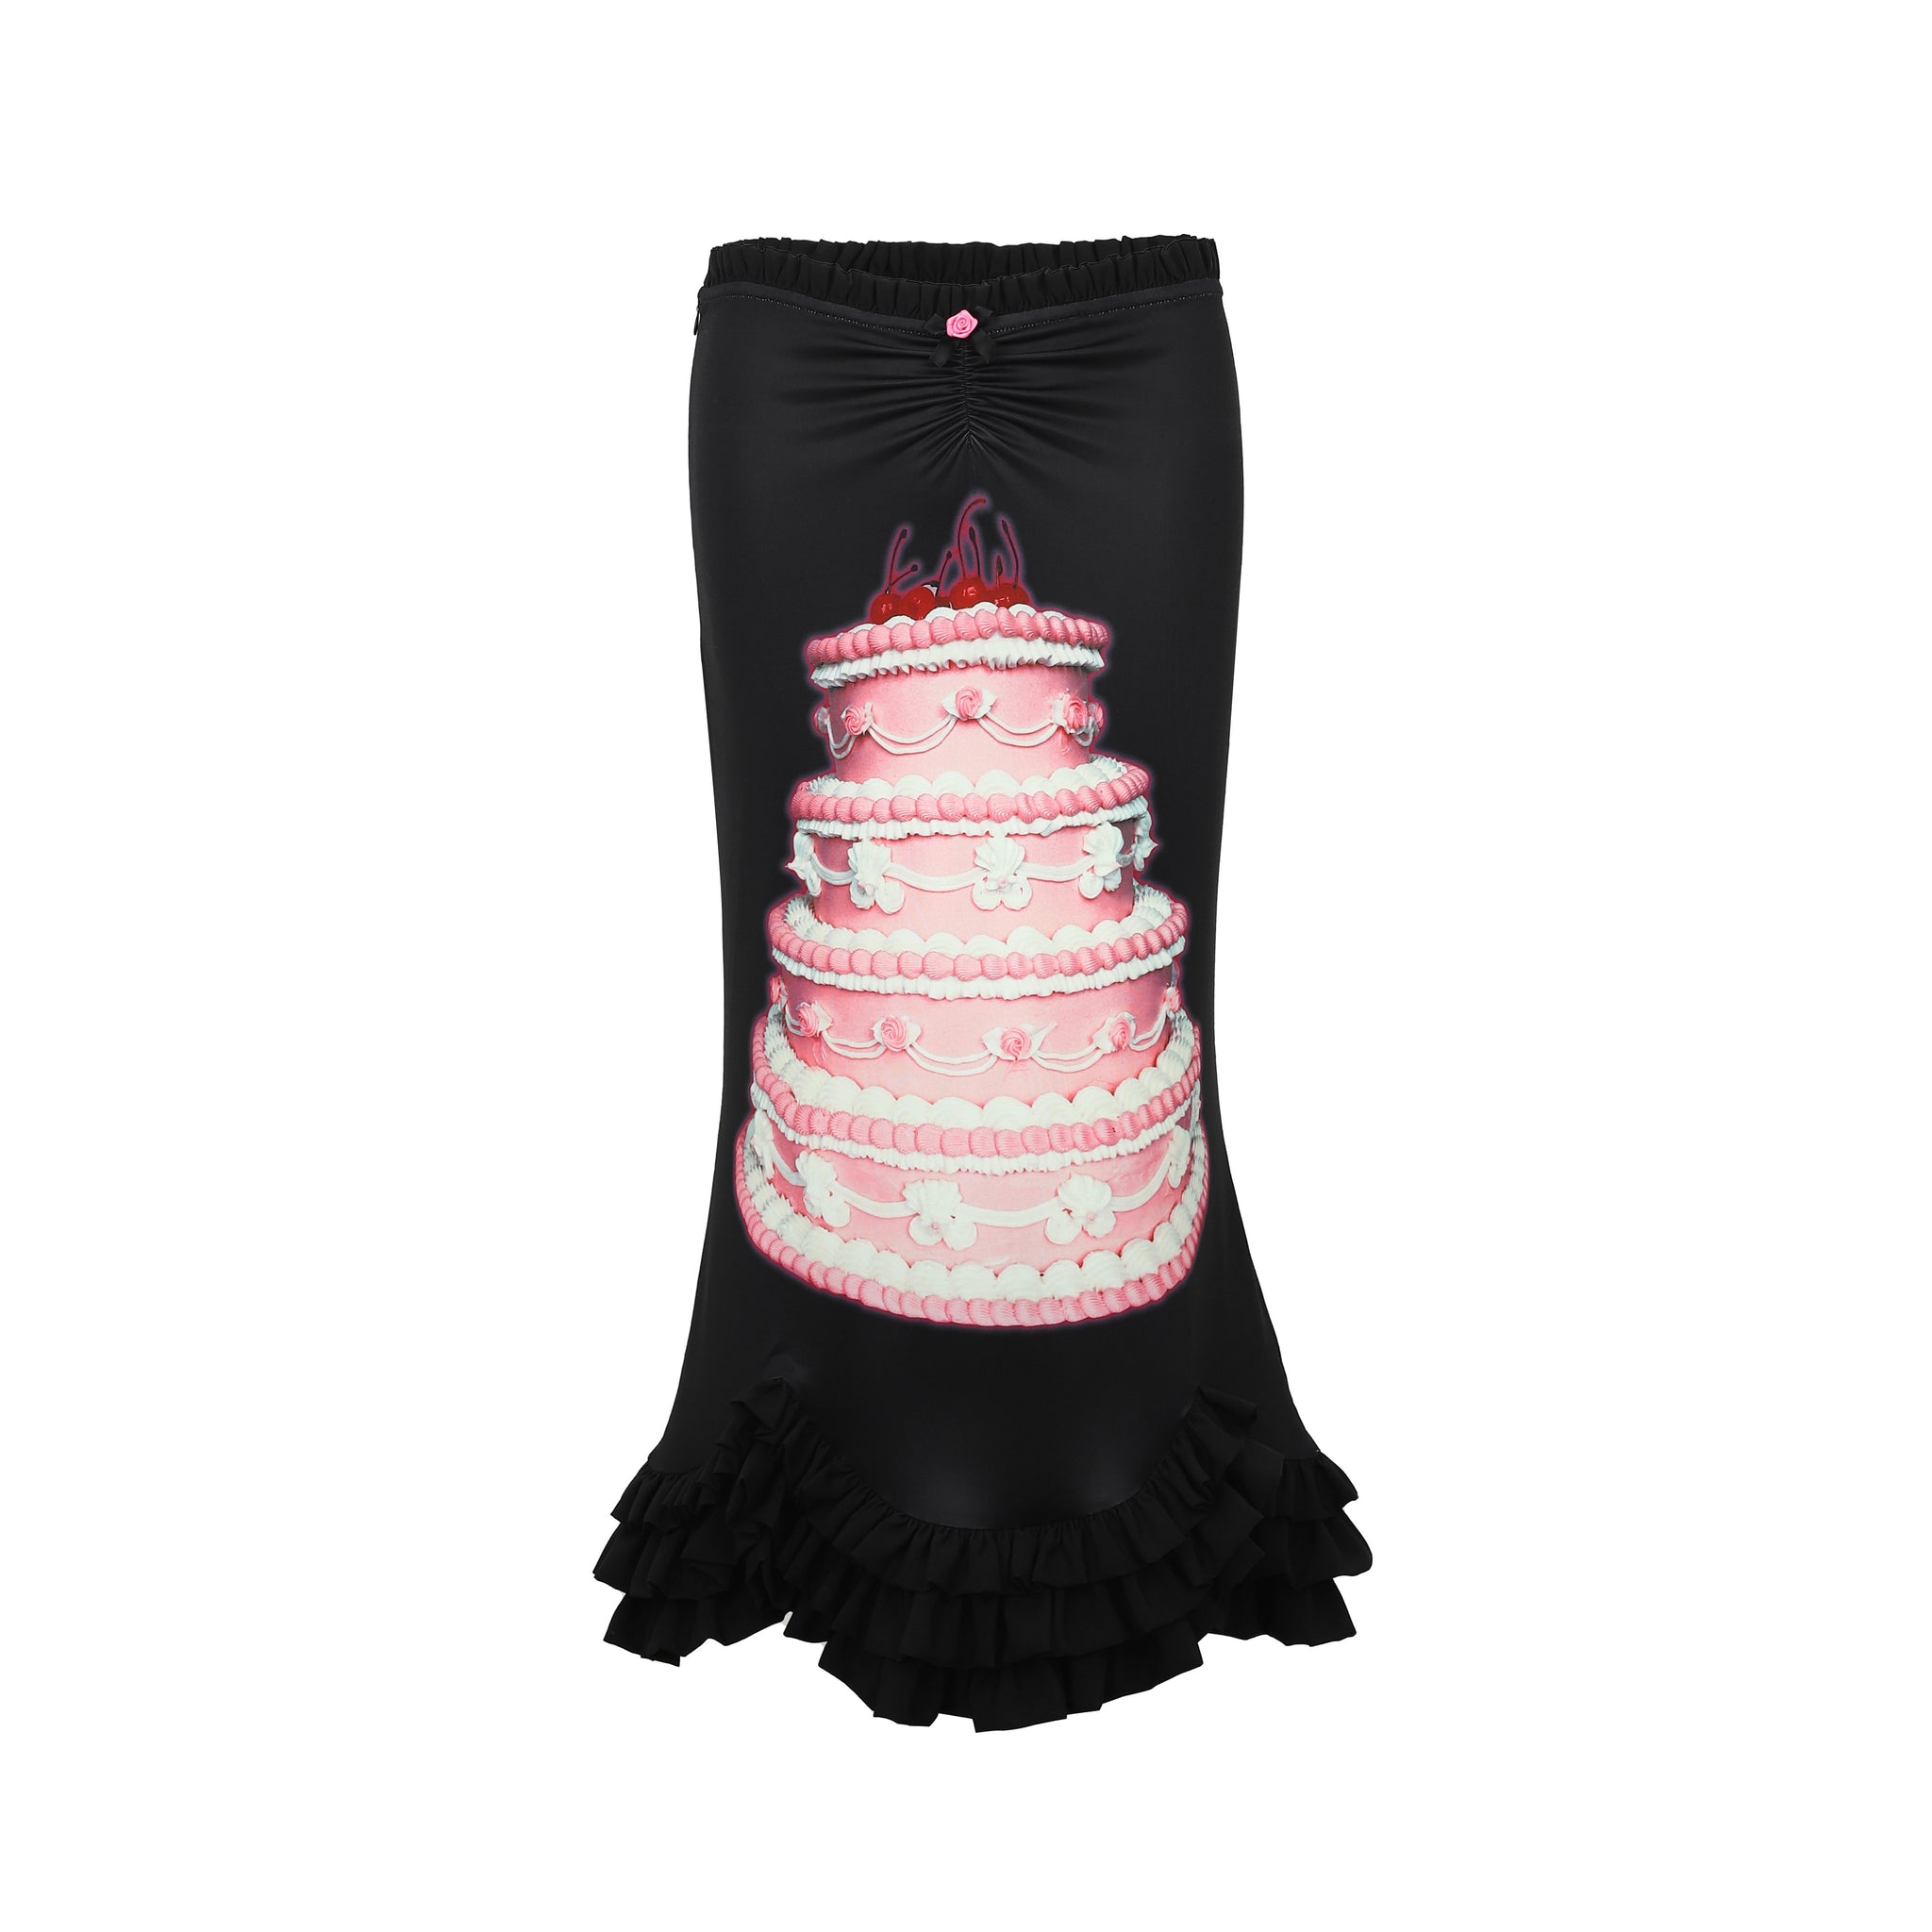 Birthday Cake Print Black Stretchy Fishtail Skirt.